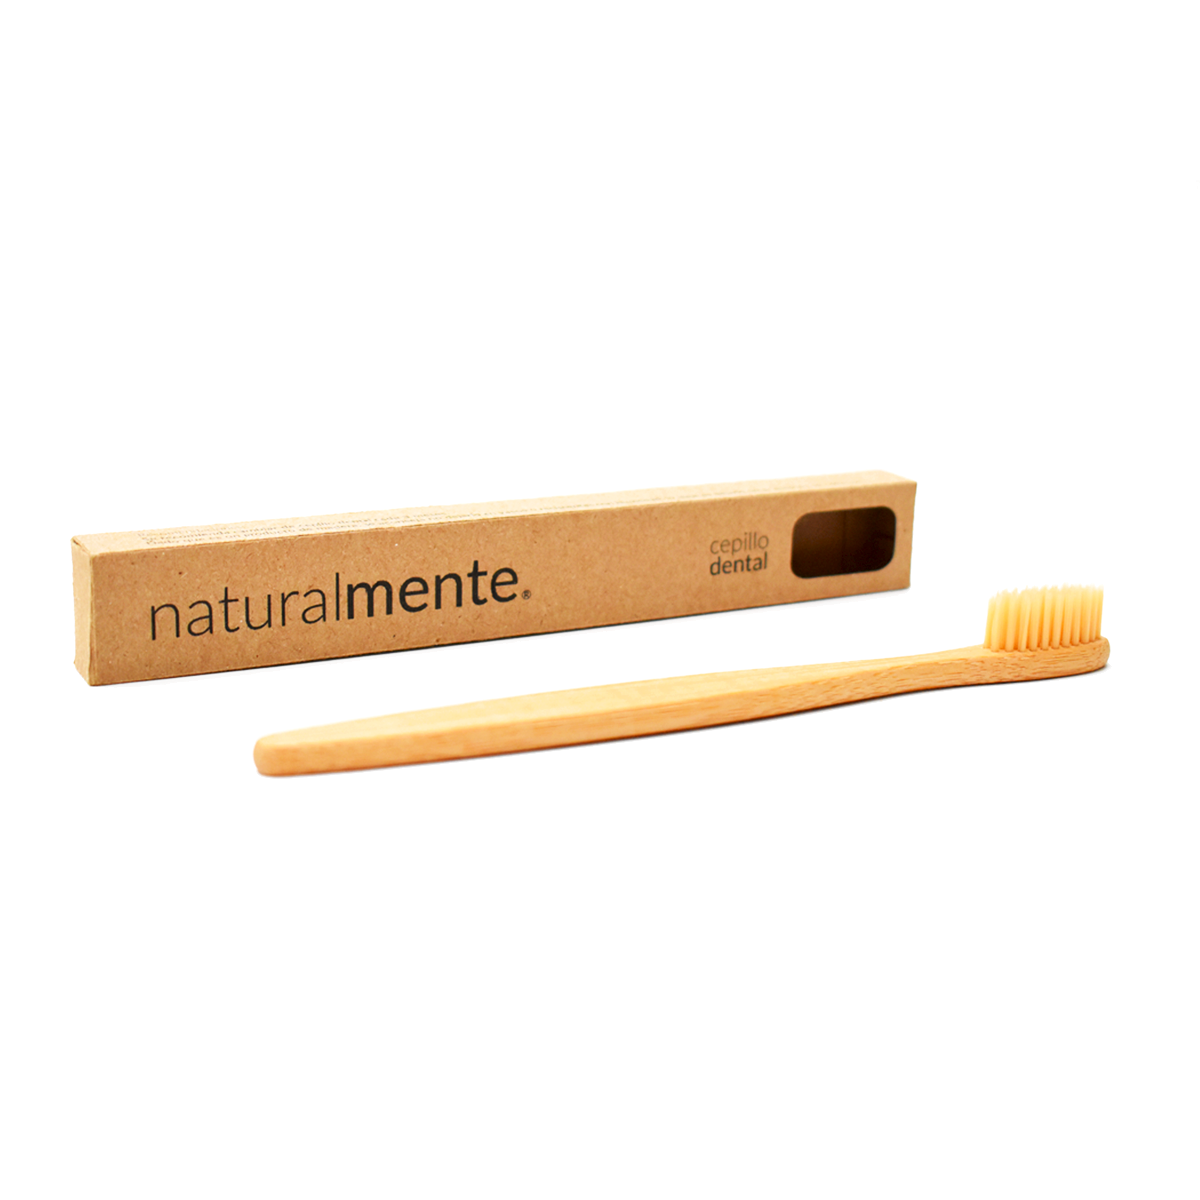 NATURALMENTE Cepillo Dental de Bambú Cerdas Color Natural en Caja 1 pieza